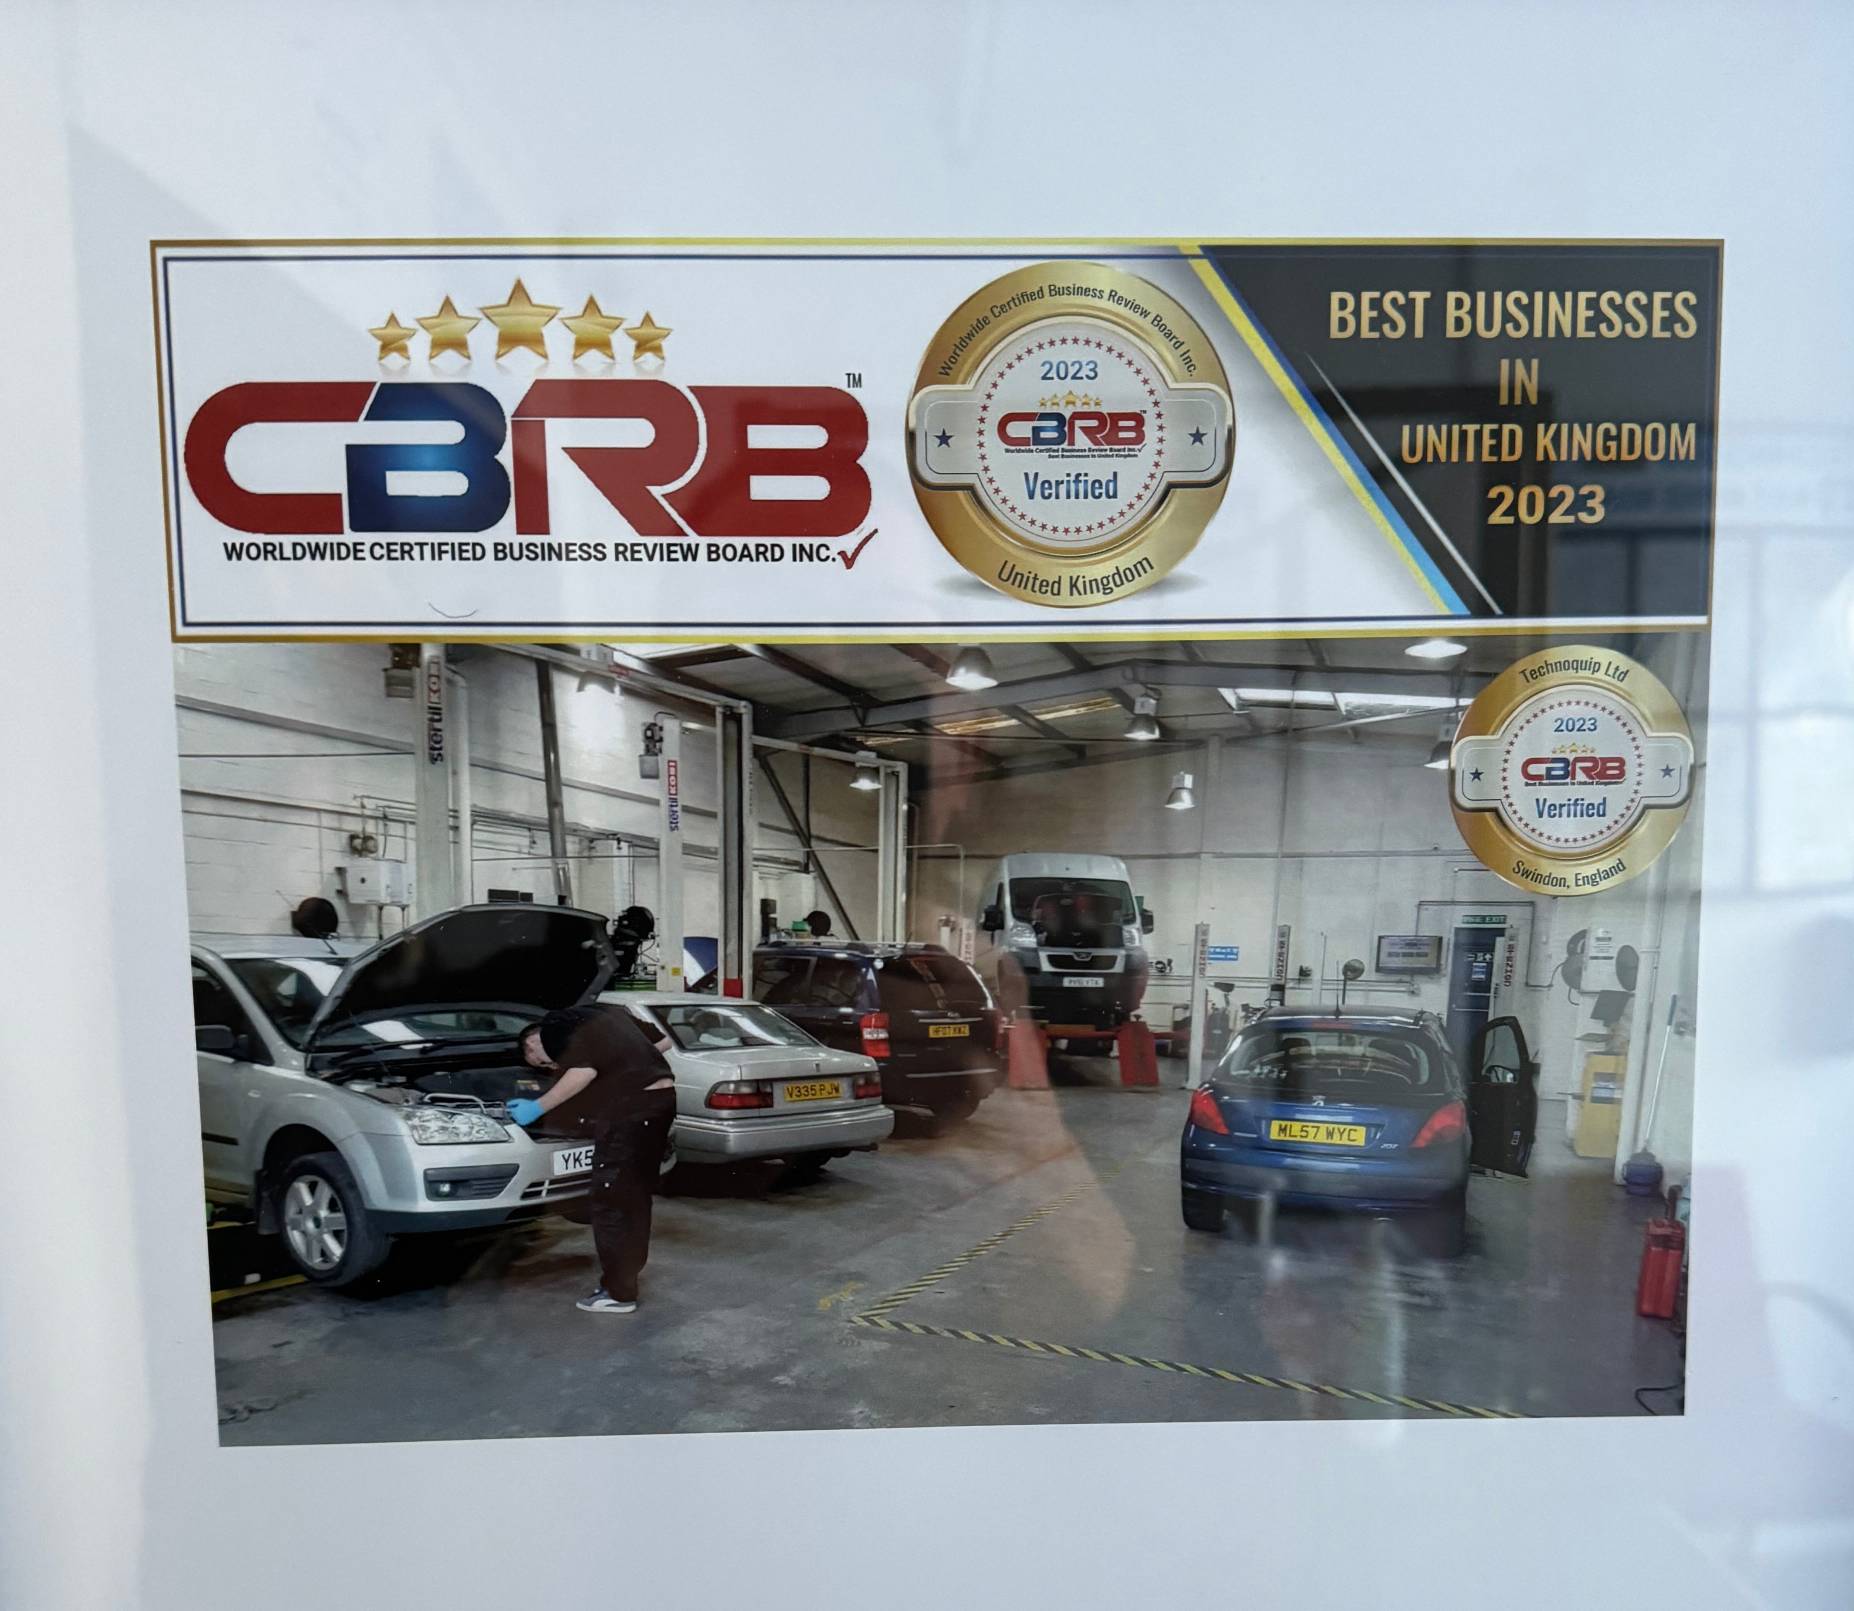 CBRB Best Business 2023